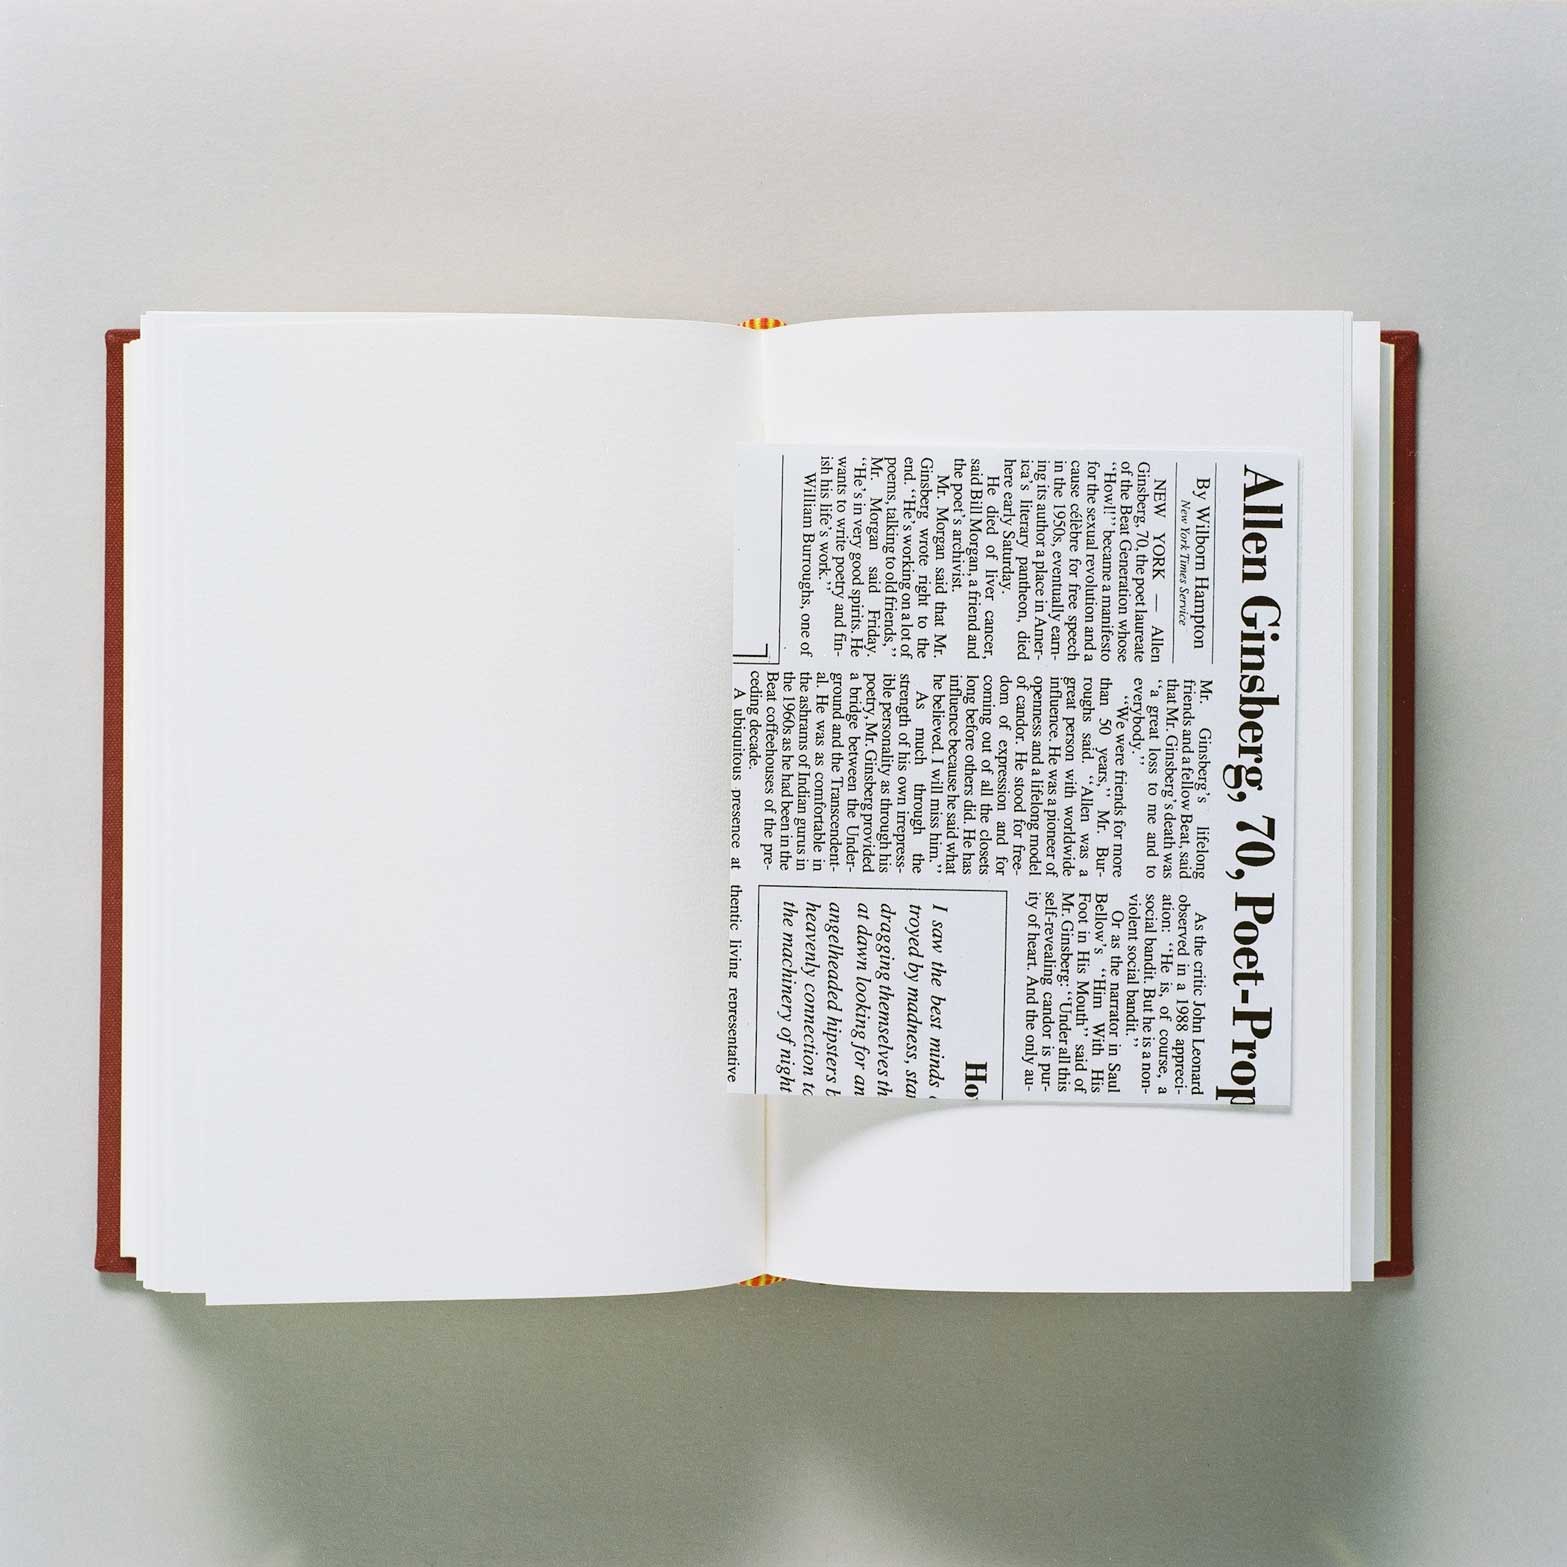 Allen Ruppersberg - The New Five Foot Shelf, 2001 - 